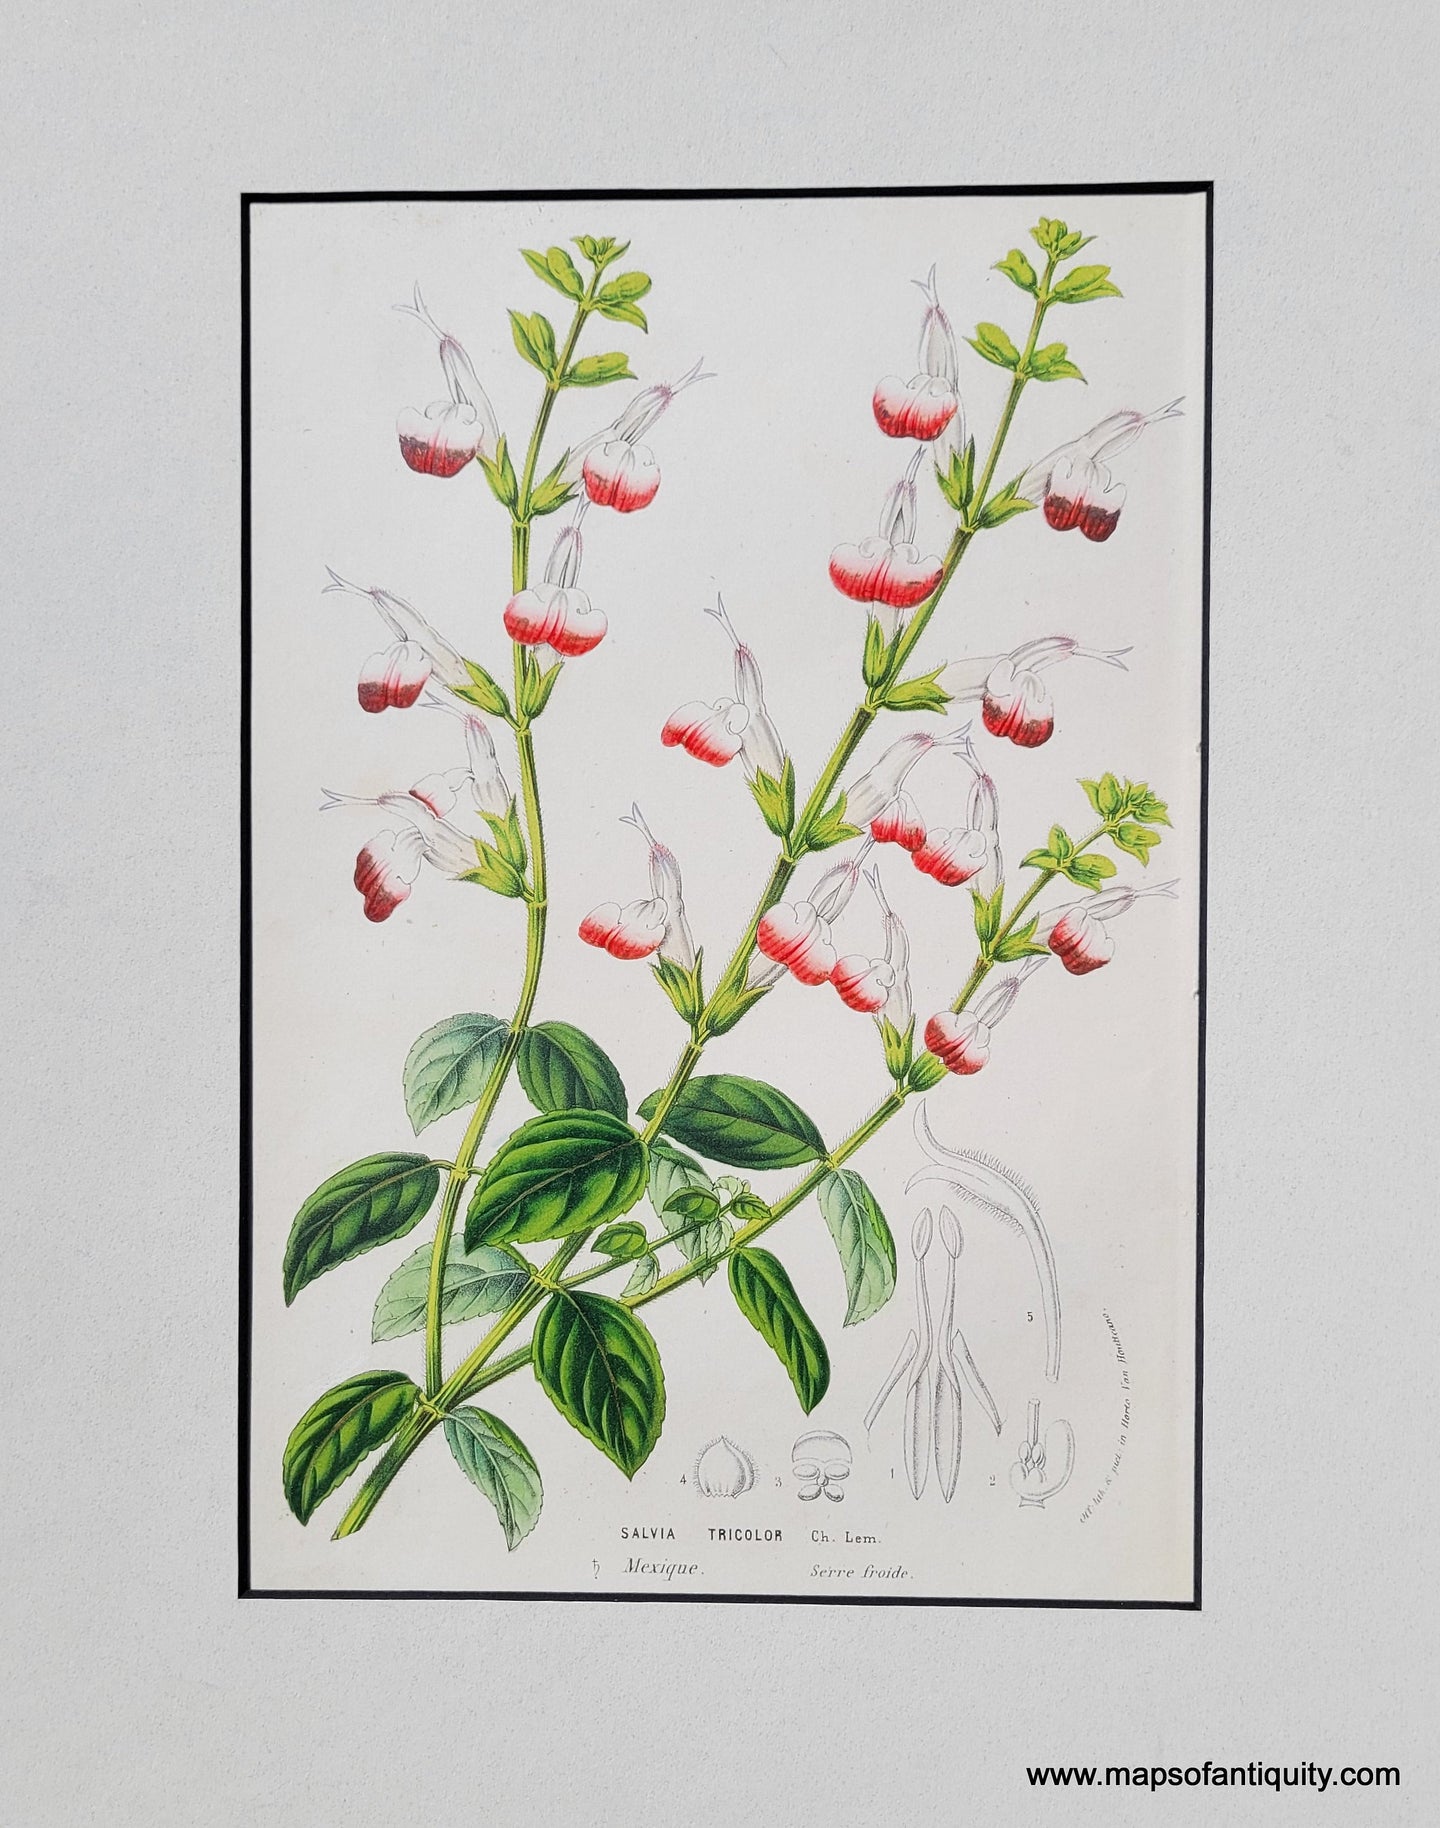 Genuine-Antique-Print-Salvia-tricolor-Lem--1850-Van-Houtte-Maps-Of-Antiquity